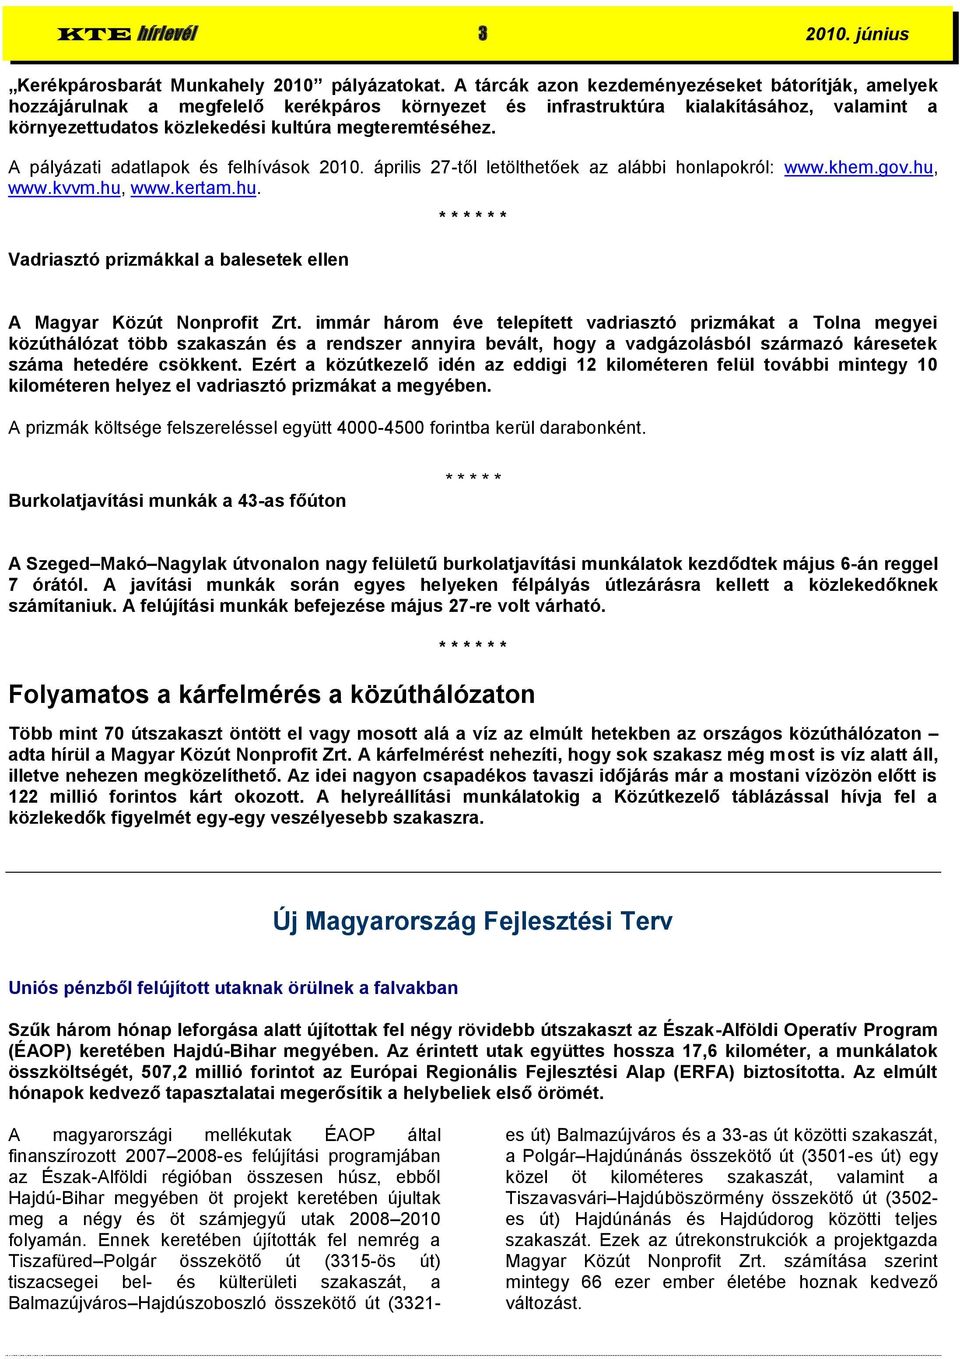 A pályázati adatlapok és felhívások 2010. április 27-től letölthetőek az alábbi honlapokról: www.khem.gov.hu, www.kvvm.hu, www.kertam.hu. Vadriasztó prizmákkal a balesetek ellen * * * * * * A Magyar Közút Nonprofit Zrt.